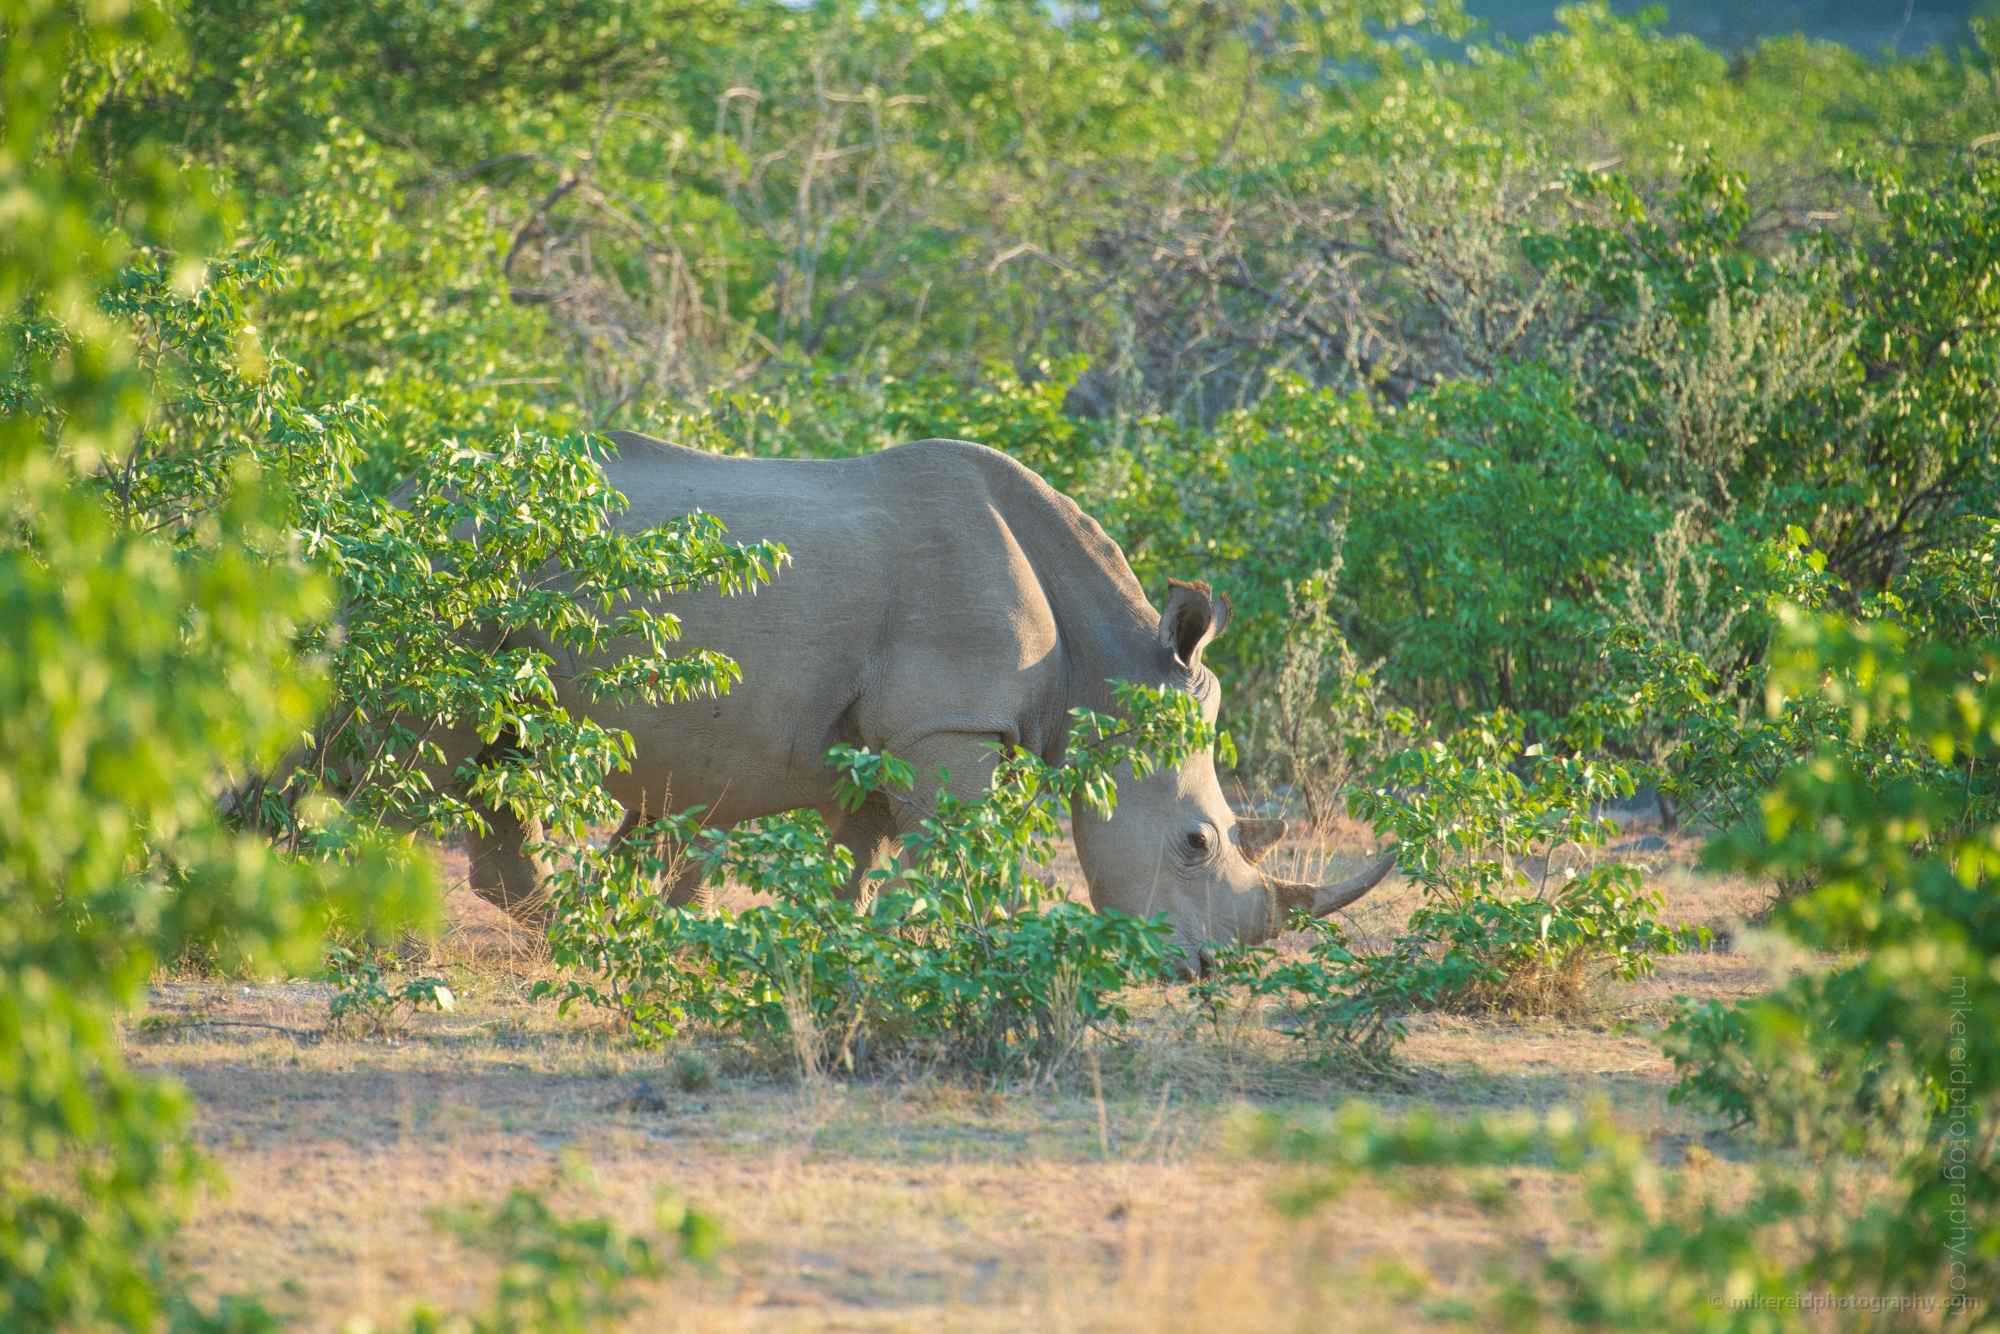 Namibia Wildlife Photography White Rhinoceros